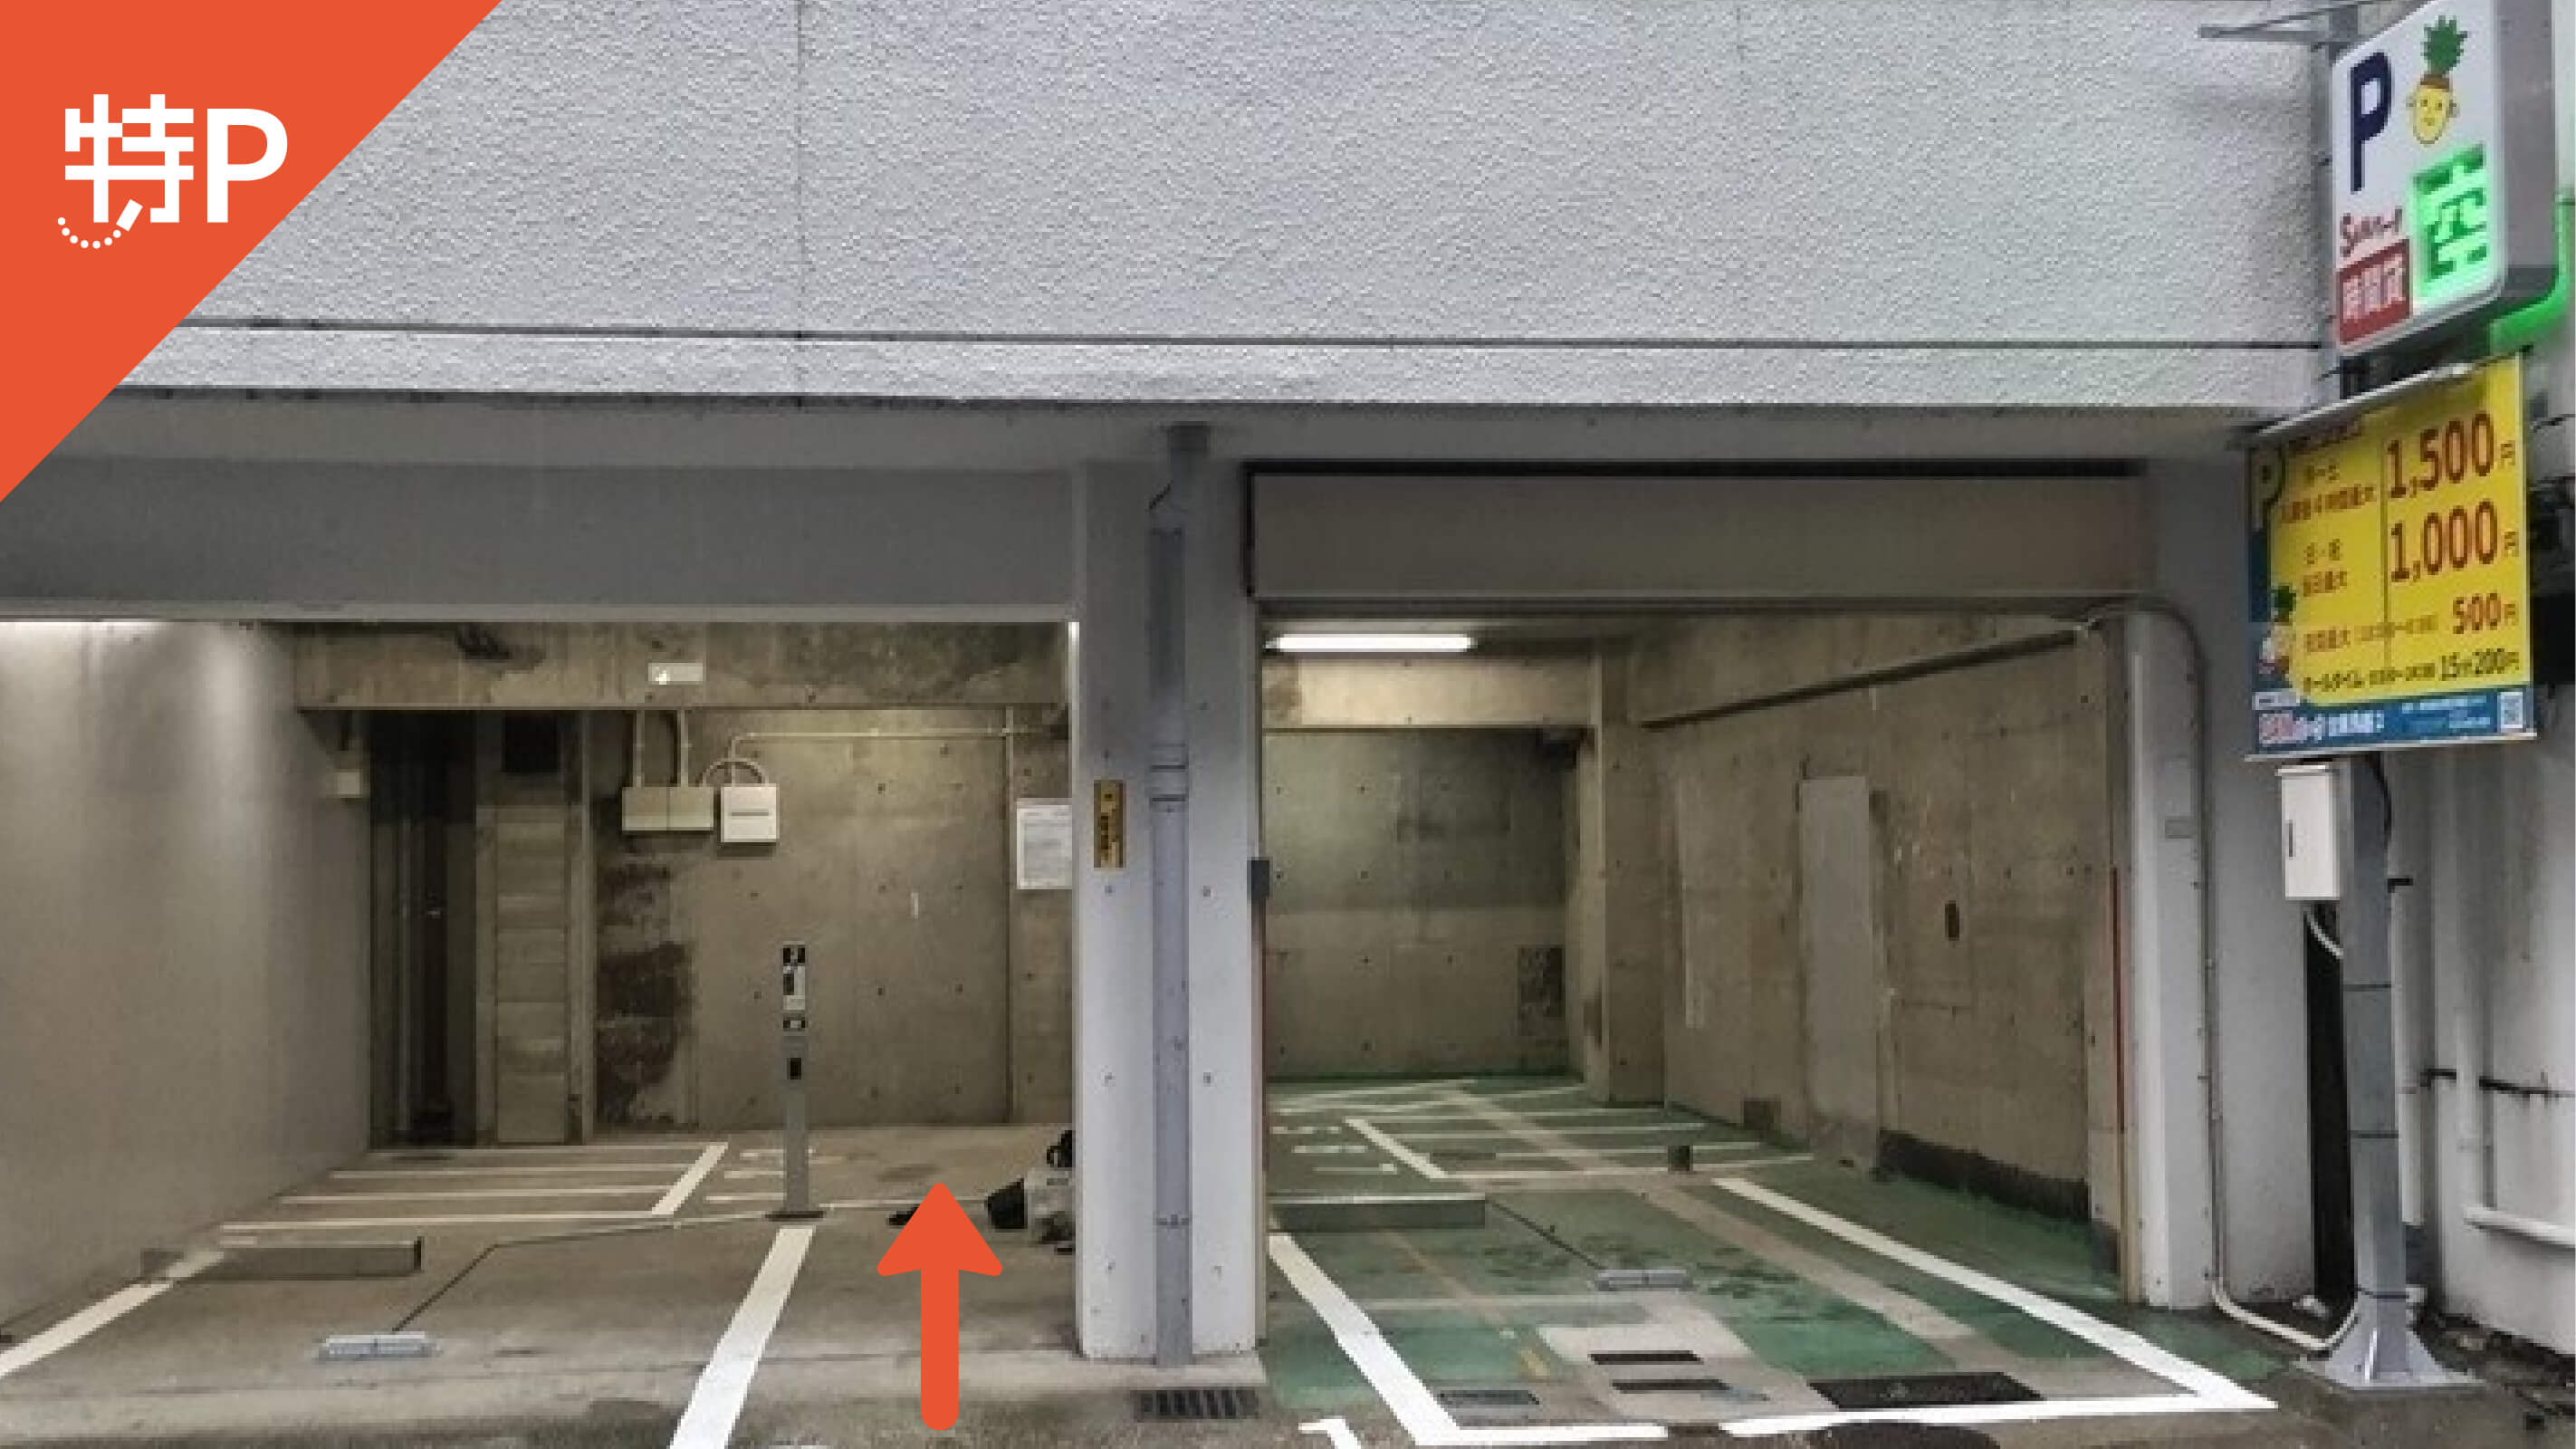 【予約制】特P 《バイク専用》SANパーク台東鳥越2駐車場の画像1